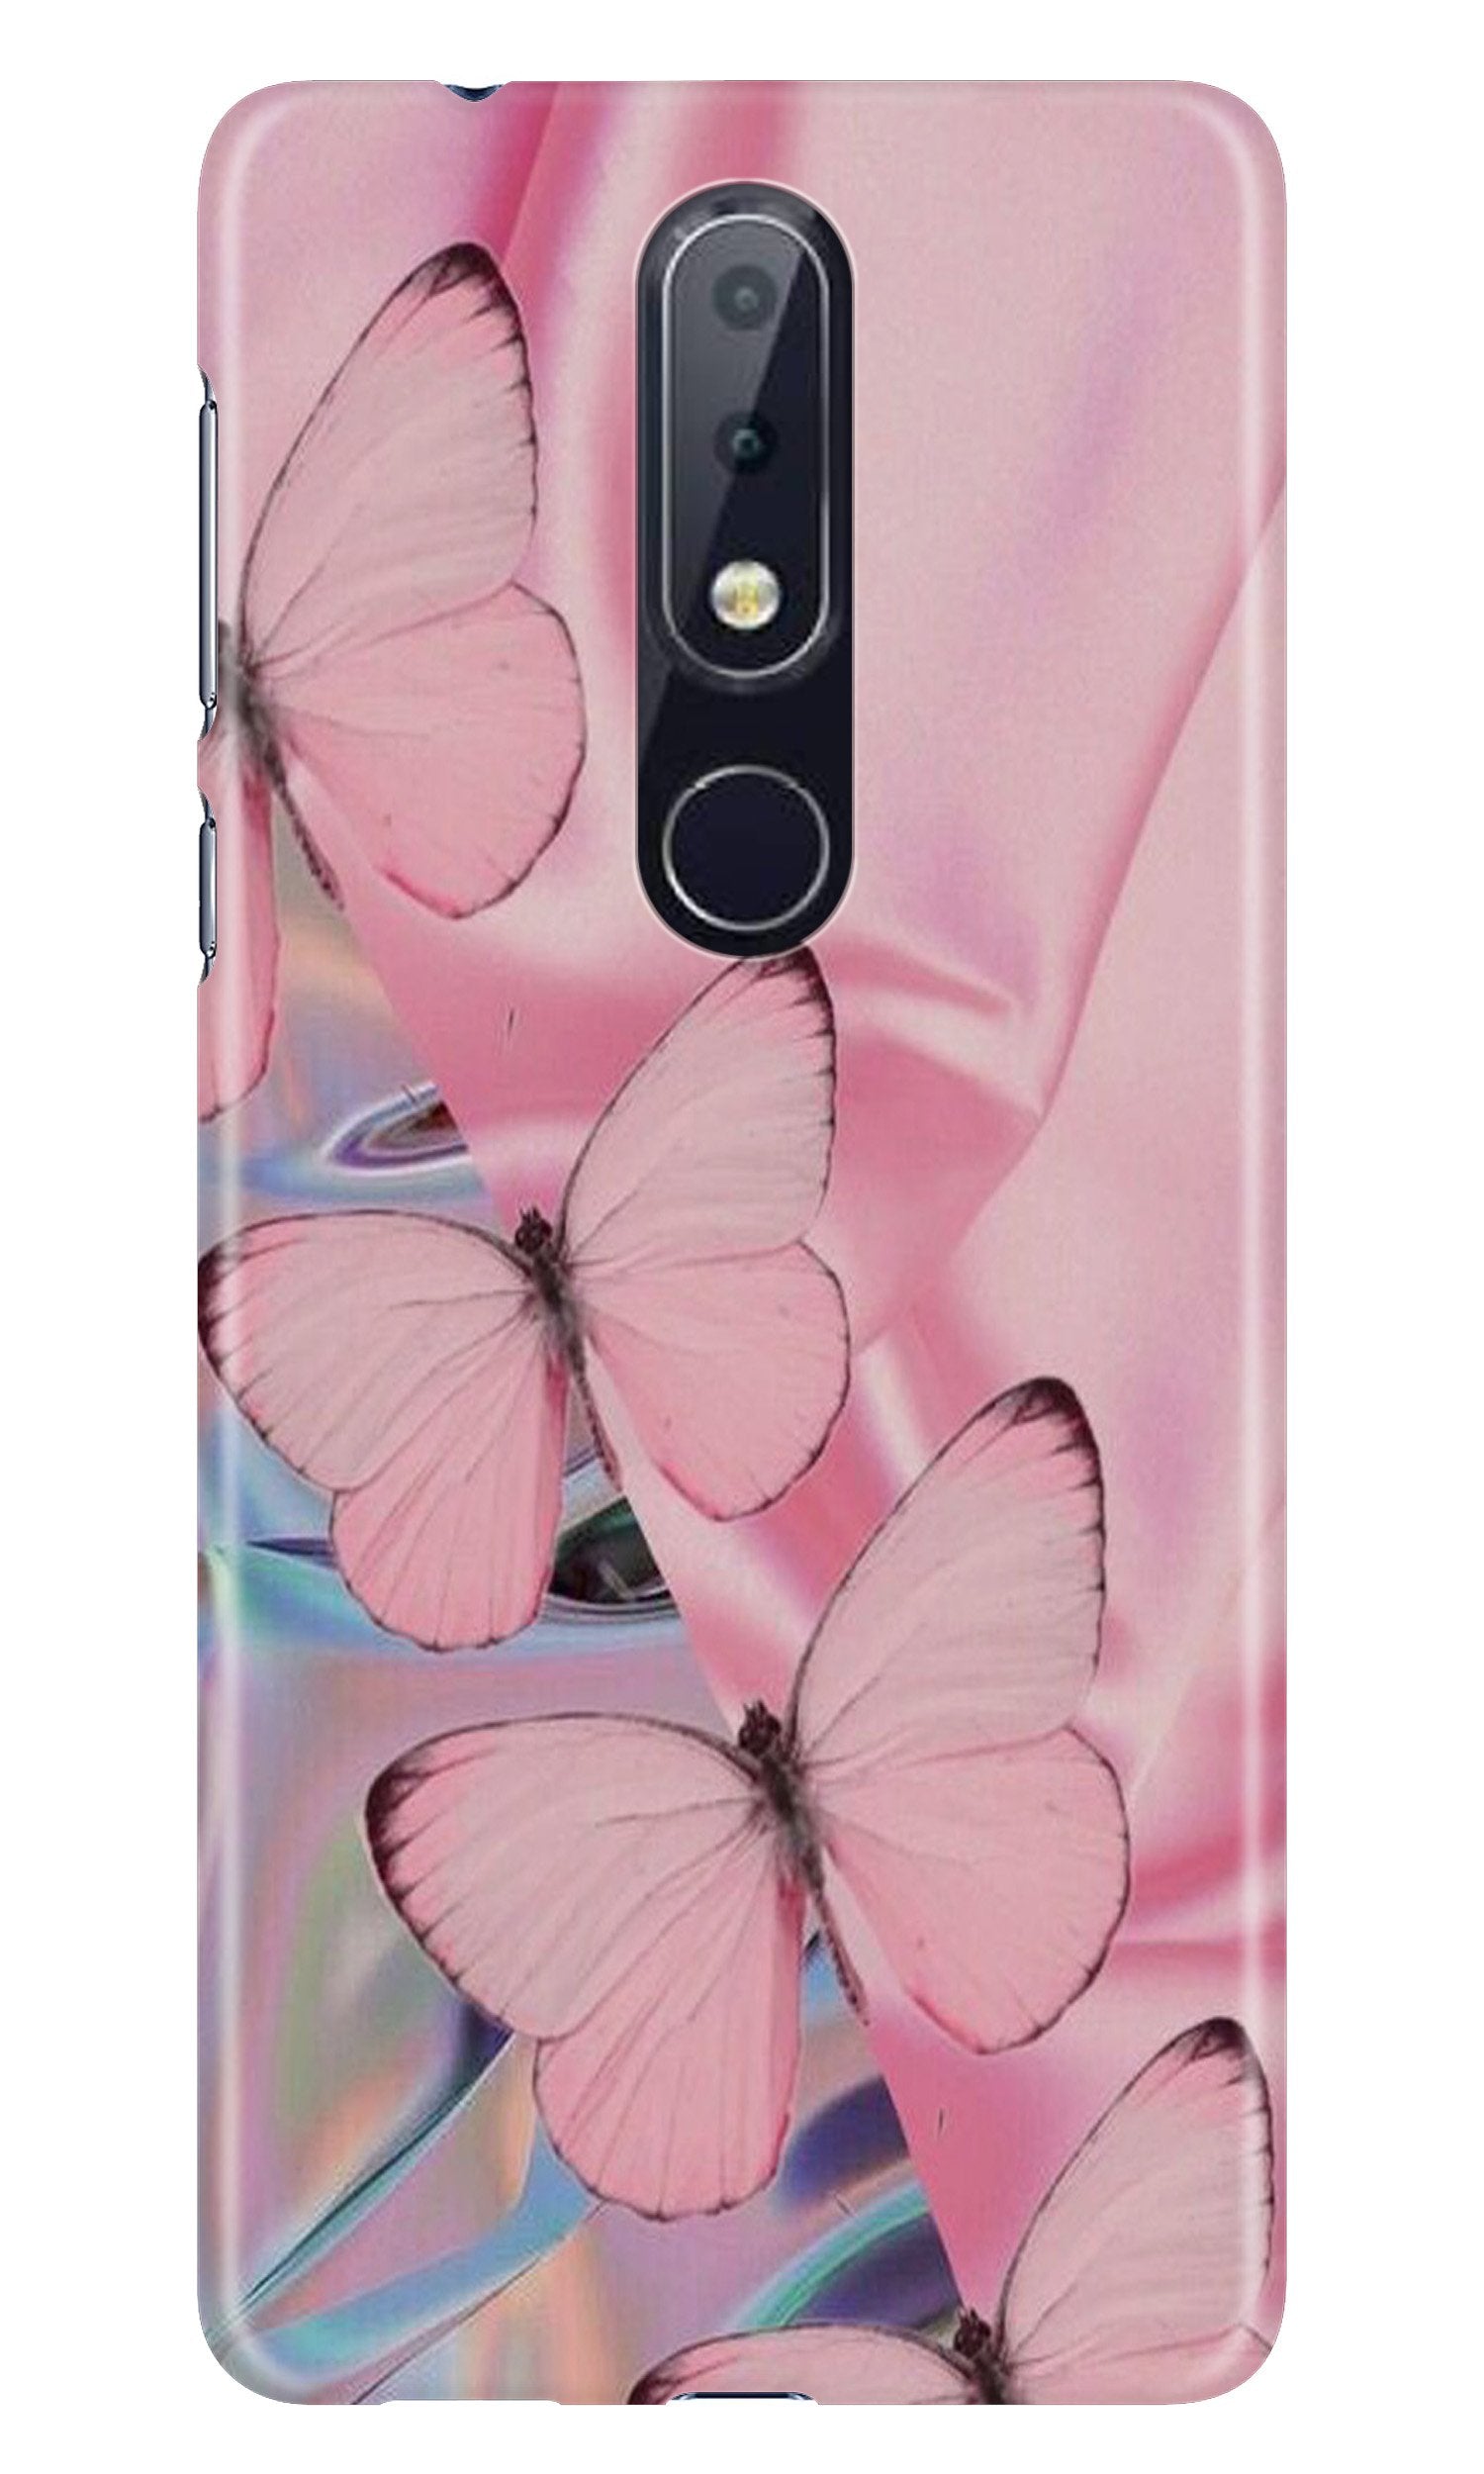 Butterflies Case for Nokia 6.1 Plus